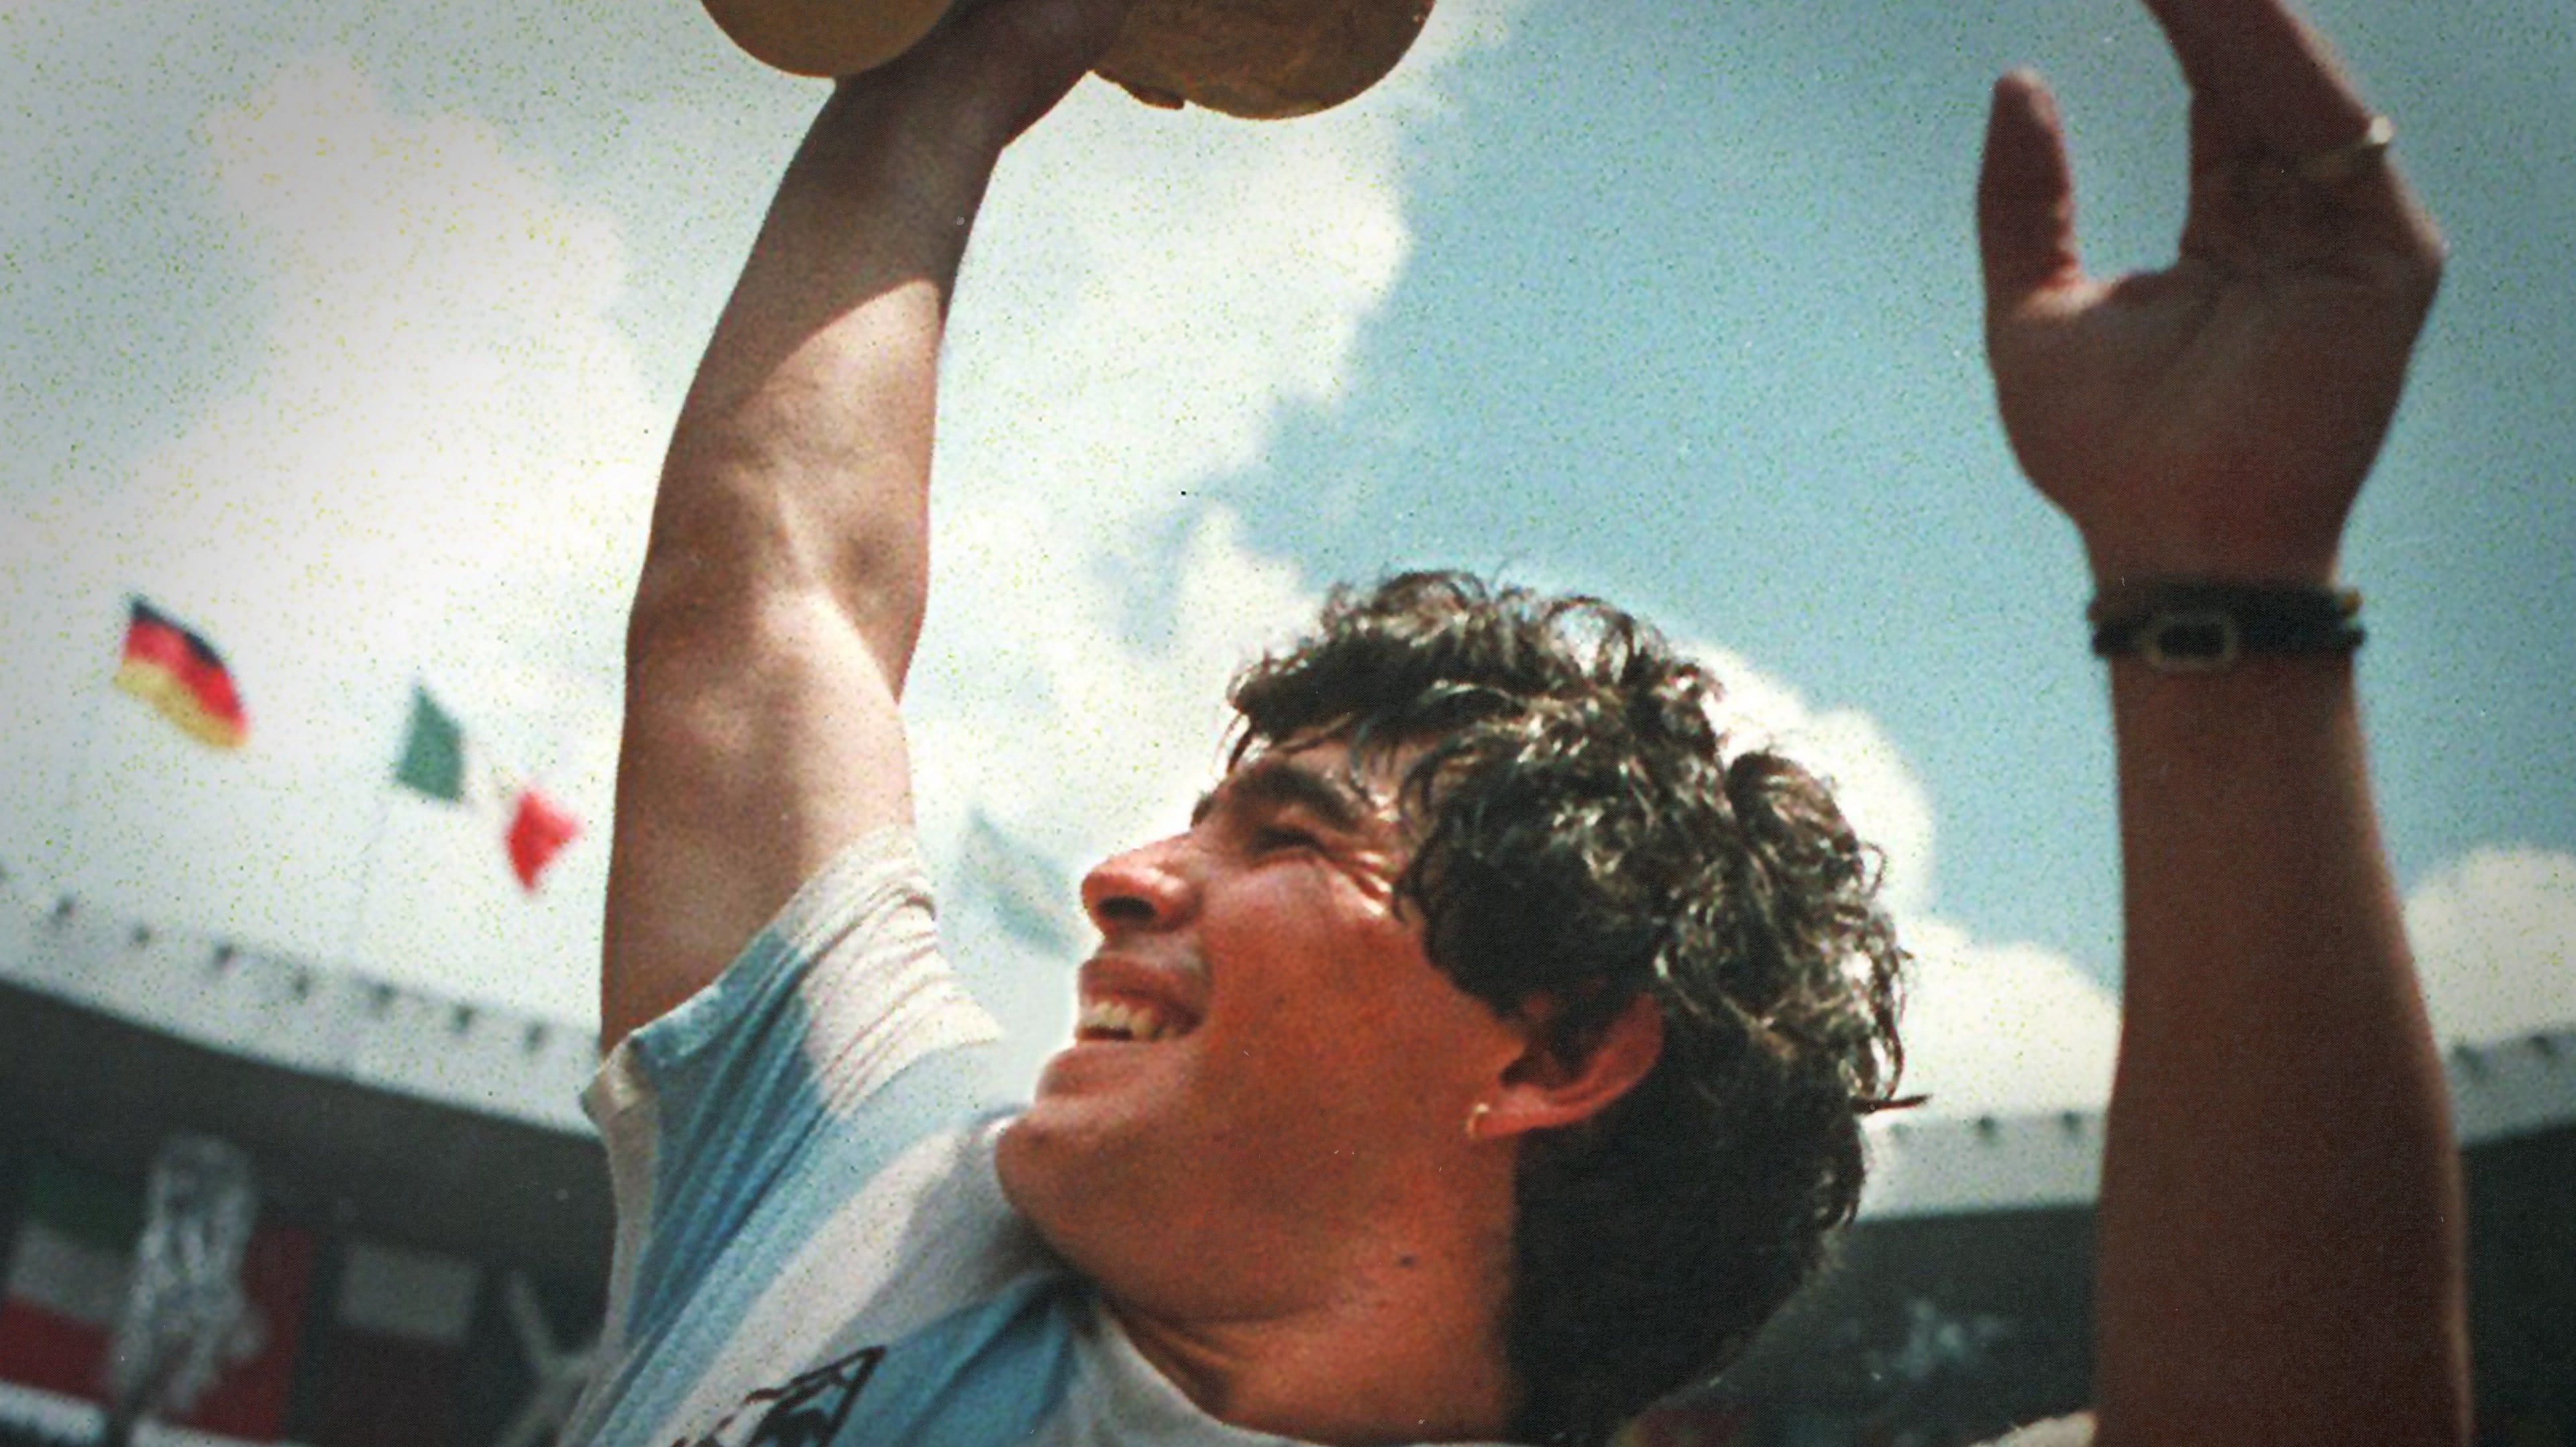 Maradona: The Greatest Ever backdrop